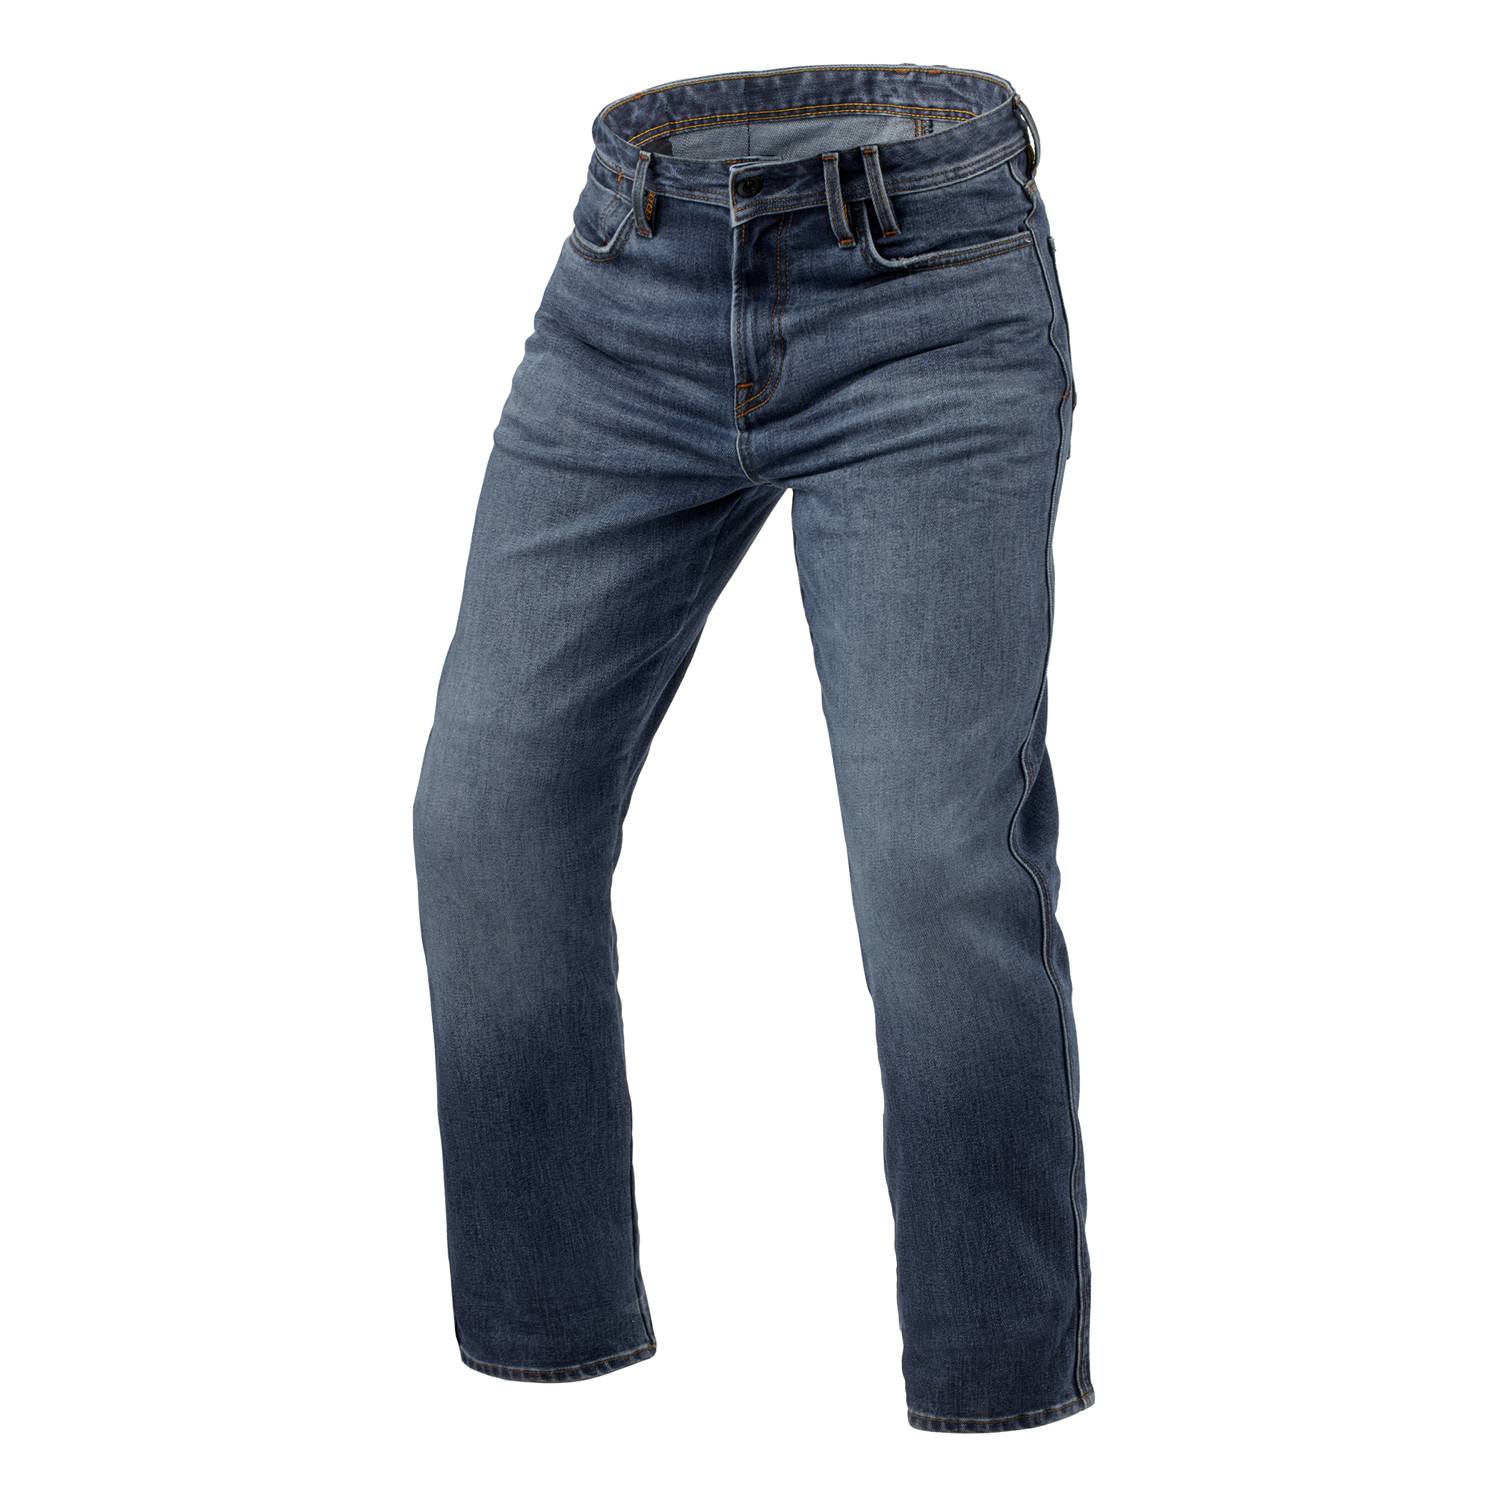 Image of REV'IT! Jeans Lombard 3 RF Medium Blue Stone L34 Motorcycle Jeans Size L34/W34 EN